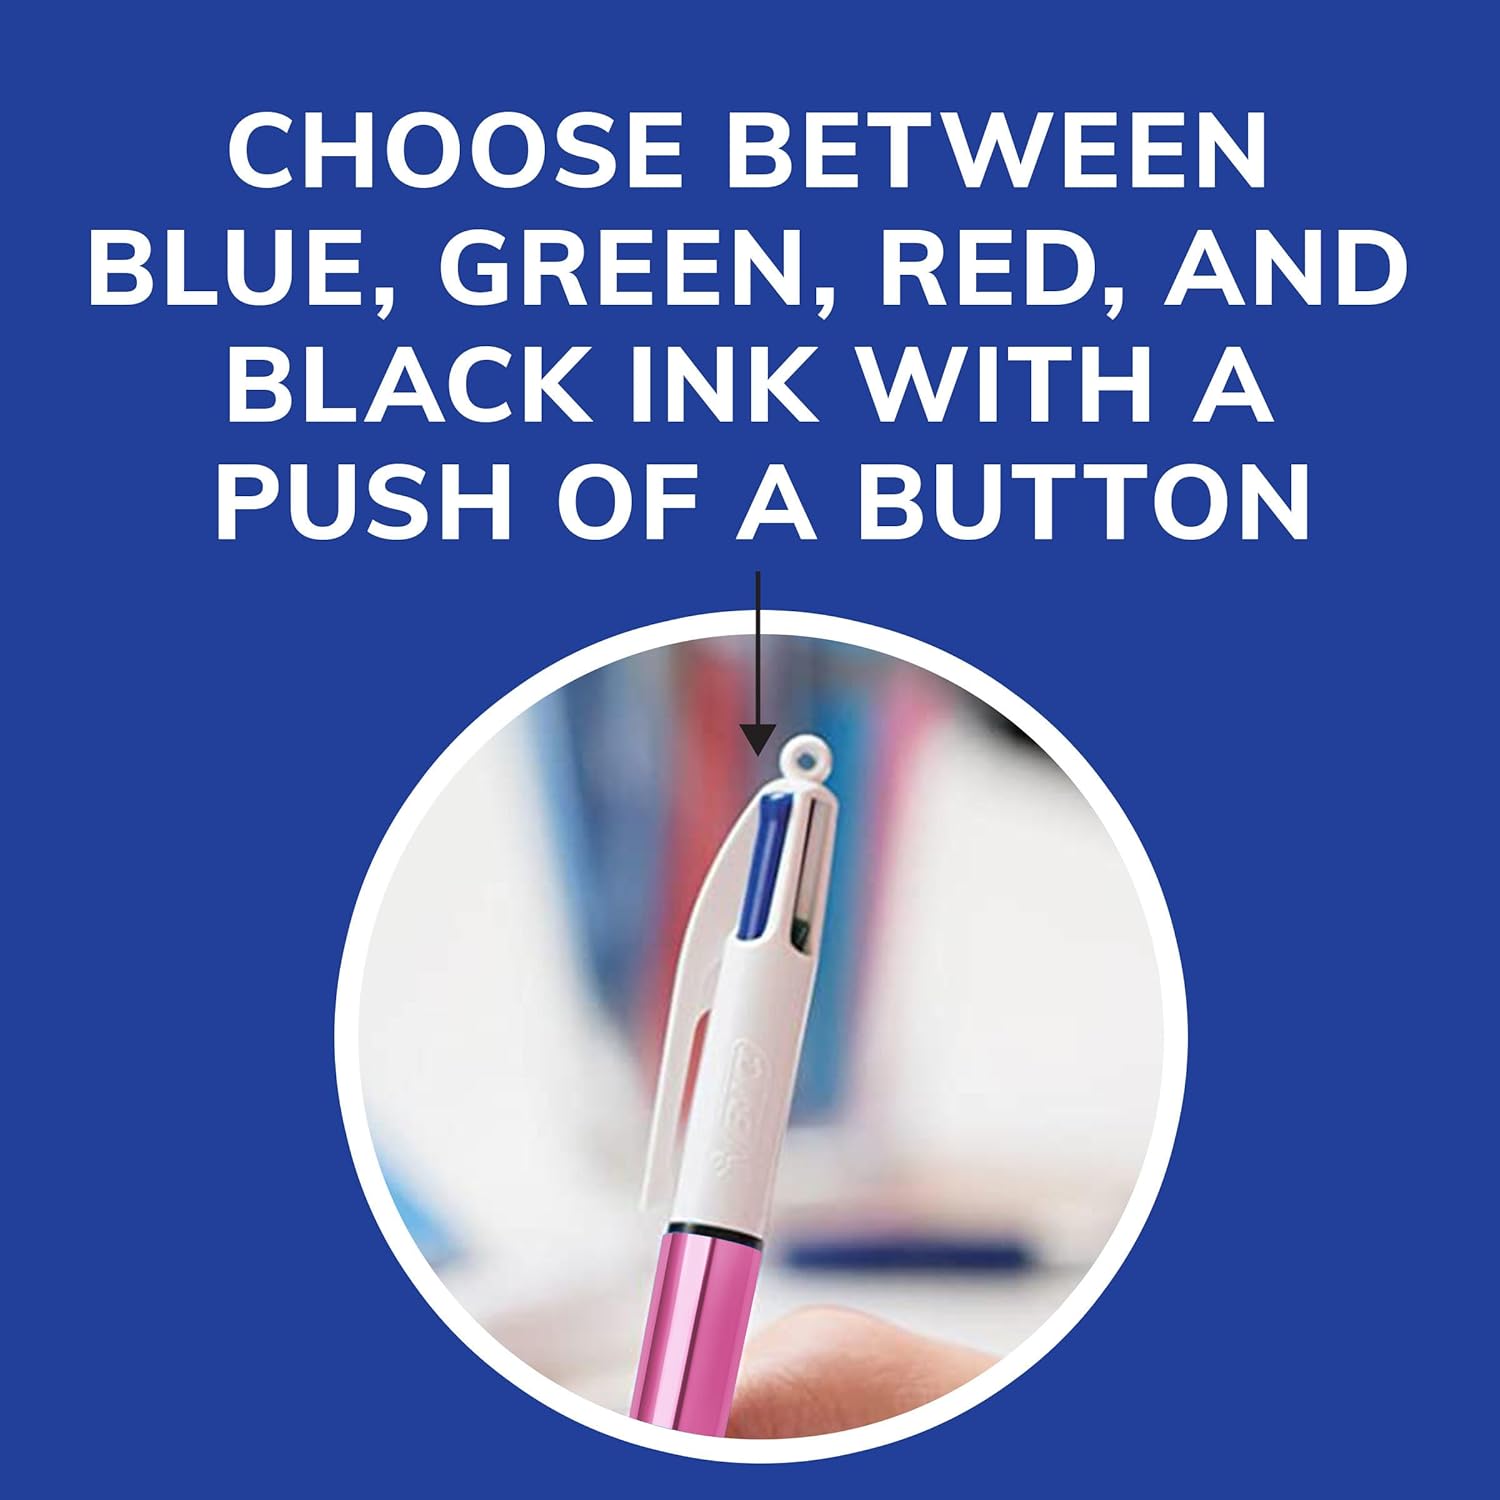 أقلام حبر قابلة للسحب ذات 4 ألوان لامعة من بيك، نقطة متوسطة (1.0 مم)، عبوة مكونة من 12 قطعة